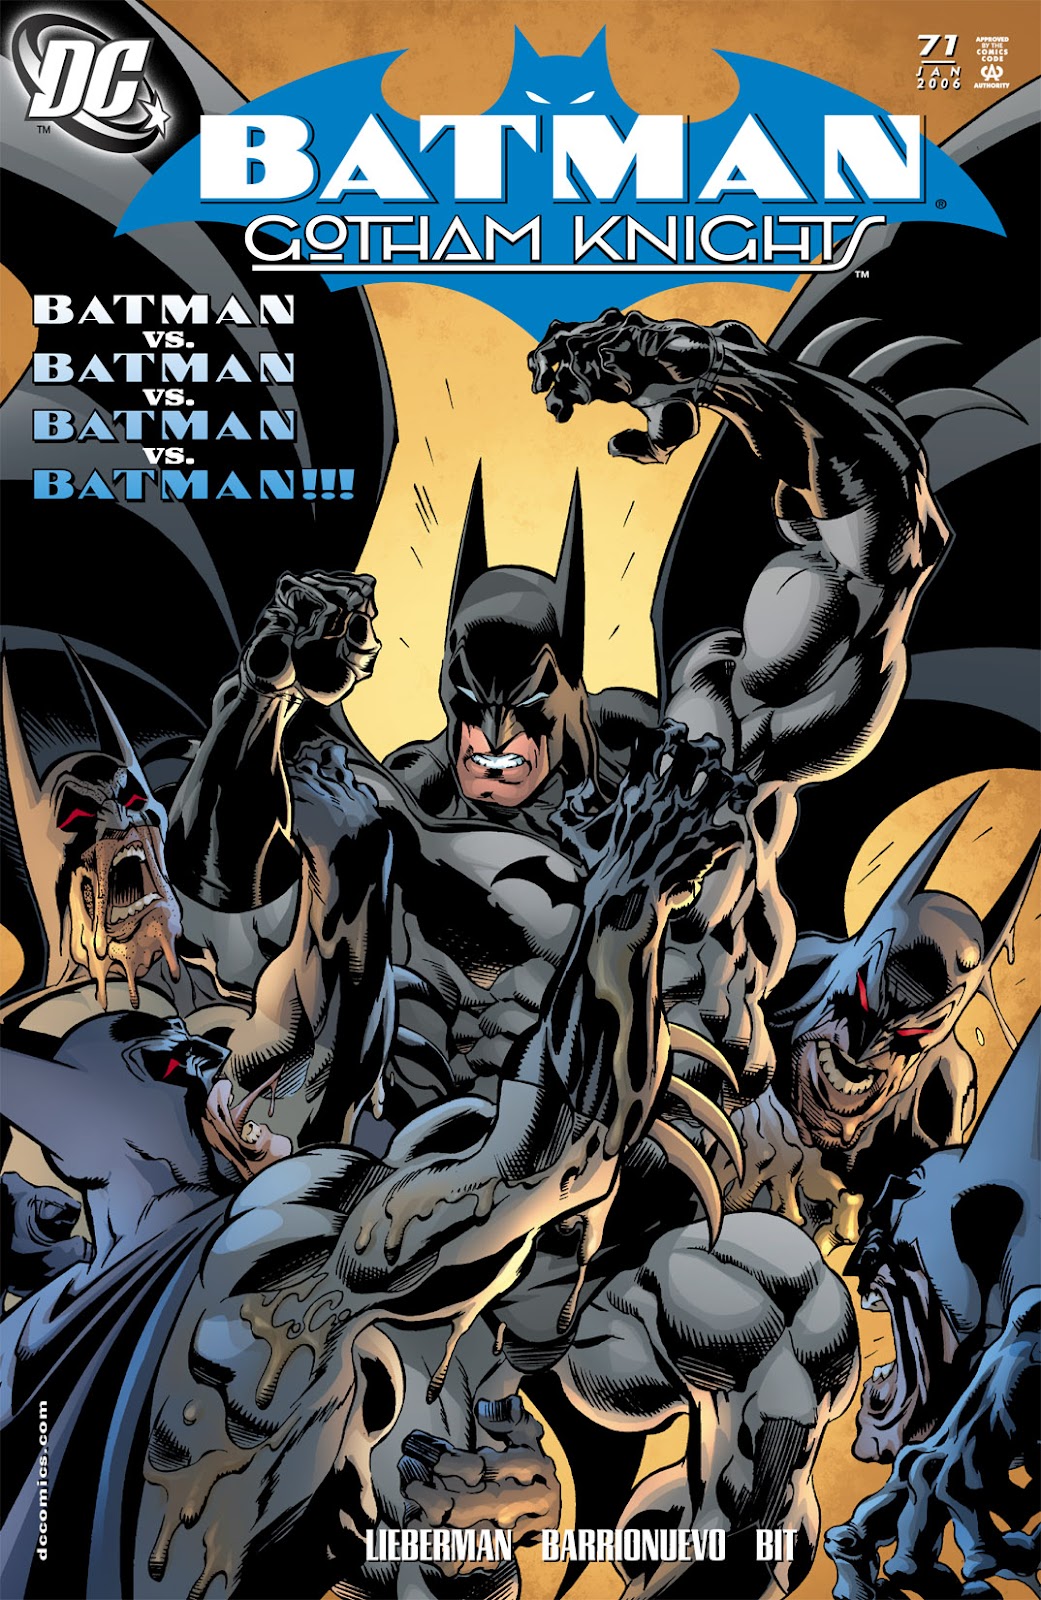 Batman: Gotham Knights issue 71 - Page 1